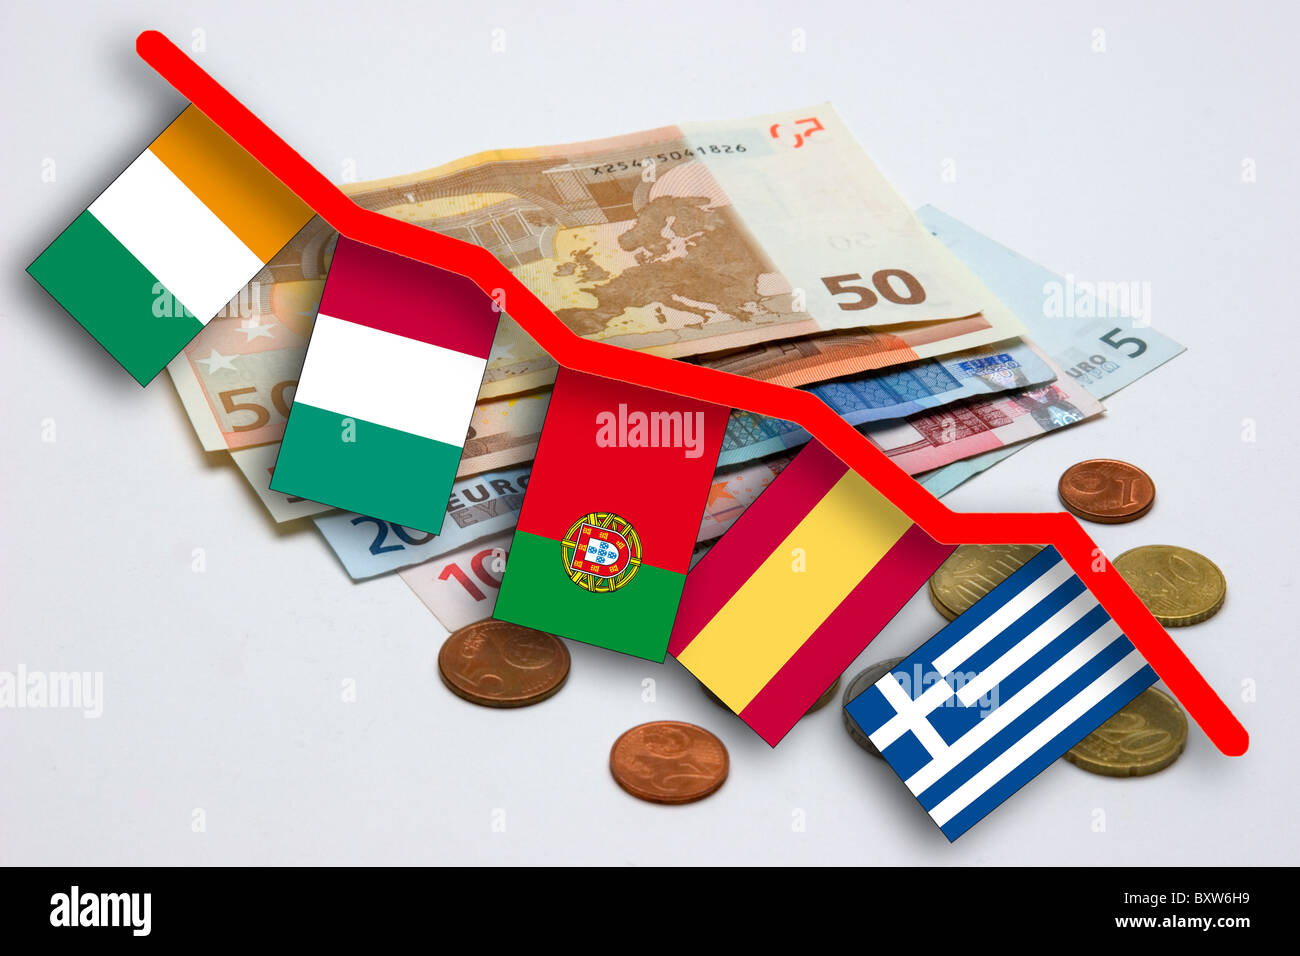 Crise de change de l'EUR pour la photo symbole de la perte de valeur de l'Euro avec les jalons de ce qu'on appelle états cochons (piggs) Banque D'Images